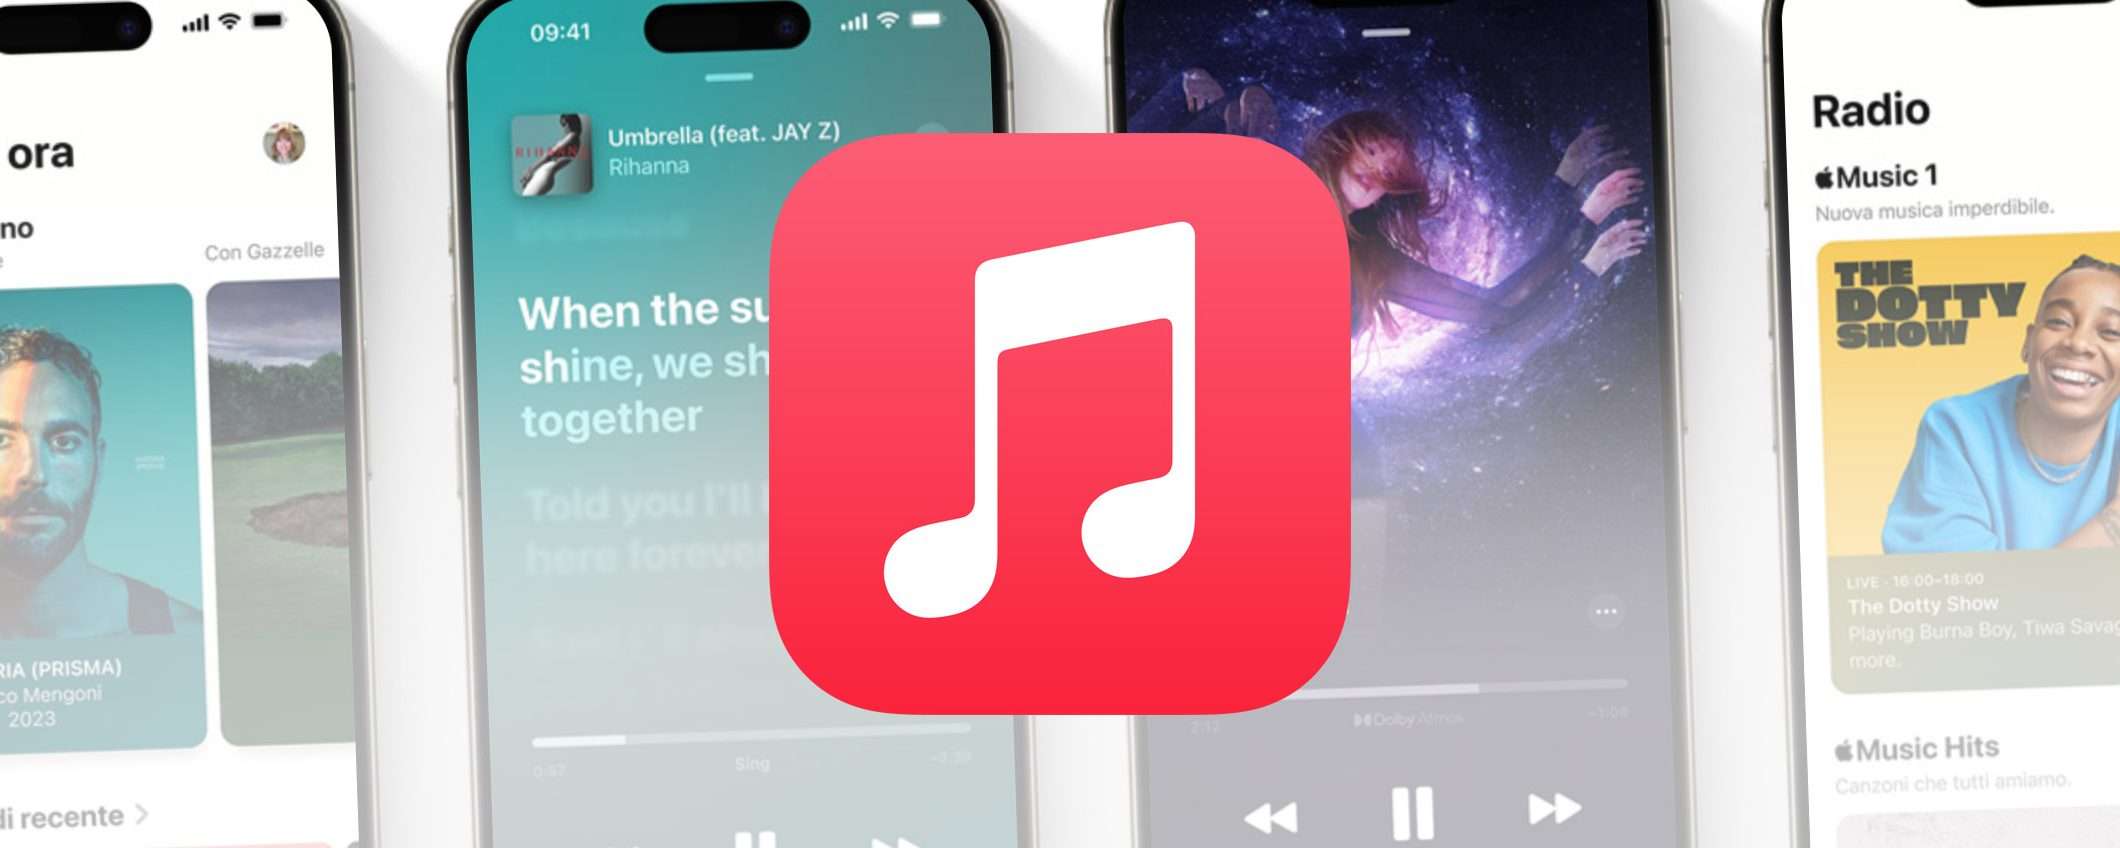 Apple Music gratis per 1 mese: inizia lo streaming